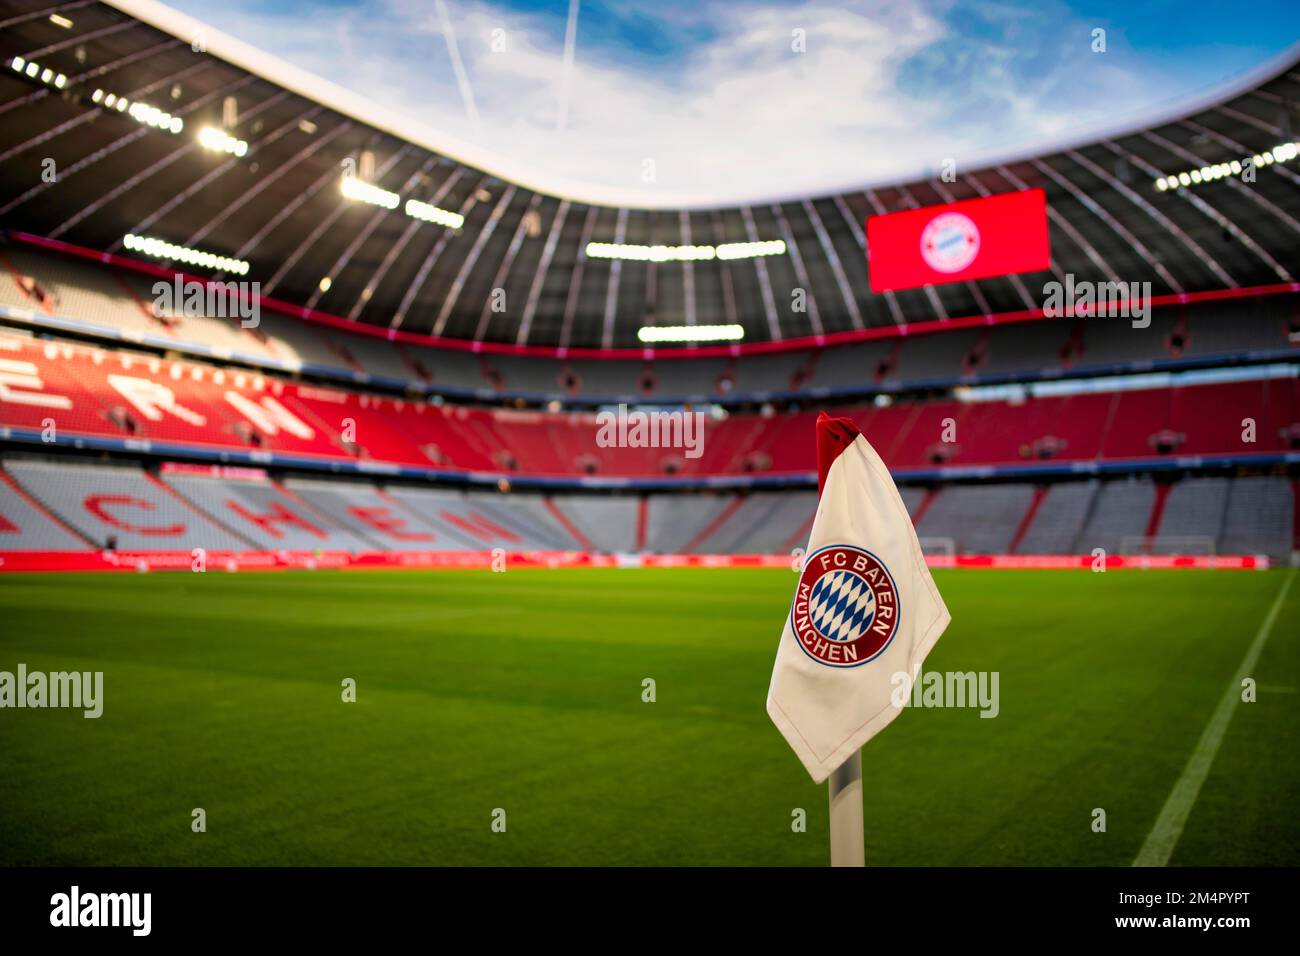 Anzeigetafel, Übersicht, Interieur, Eckflagge, Logo, FC Bayern, Allianz Arena, München, Bayern, Deutschland Stockfoto